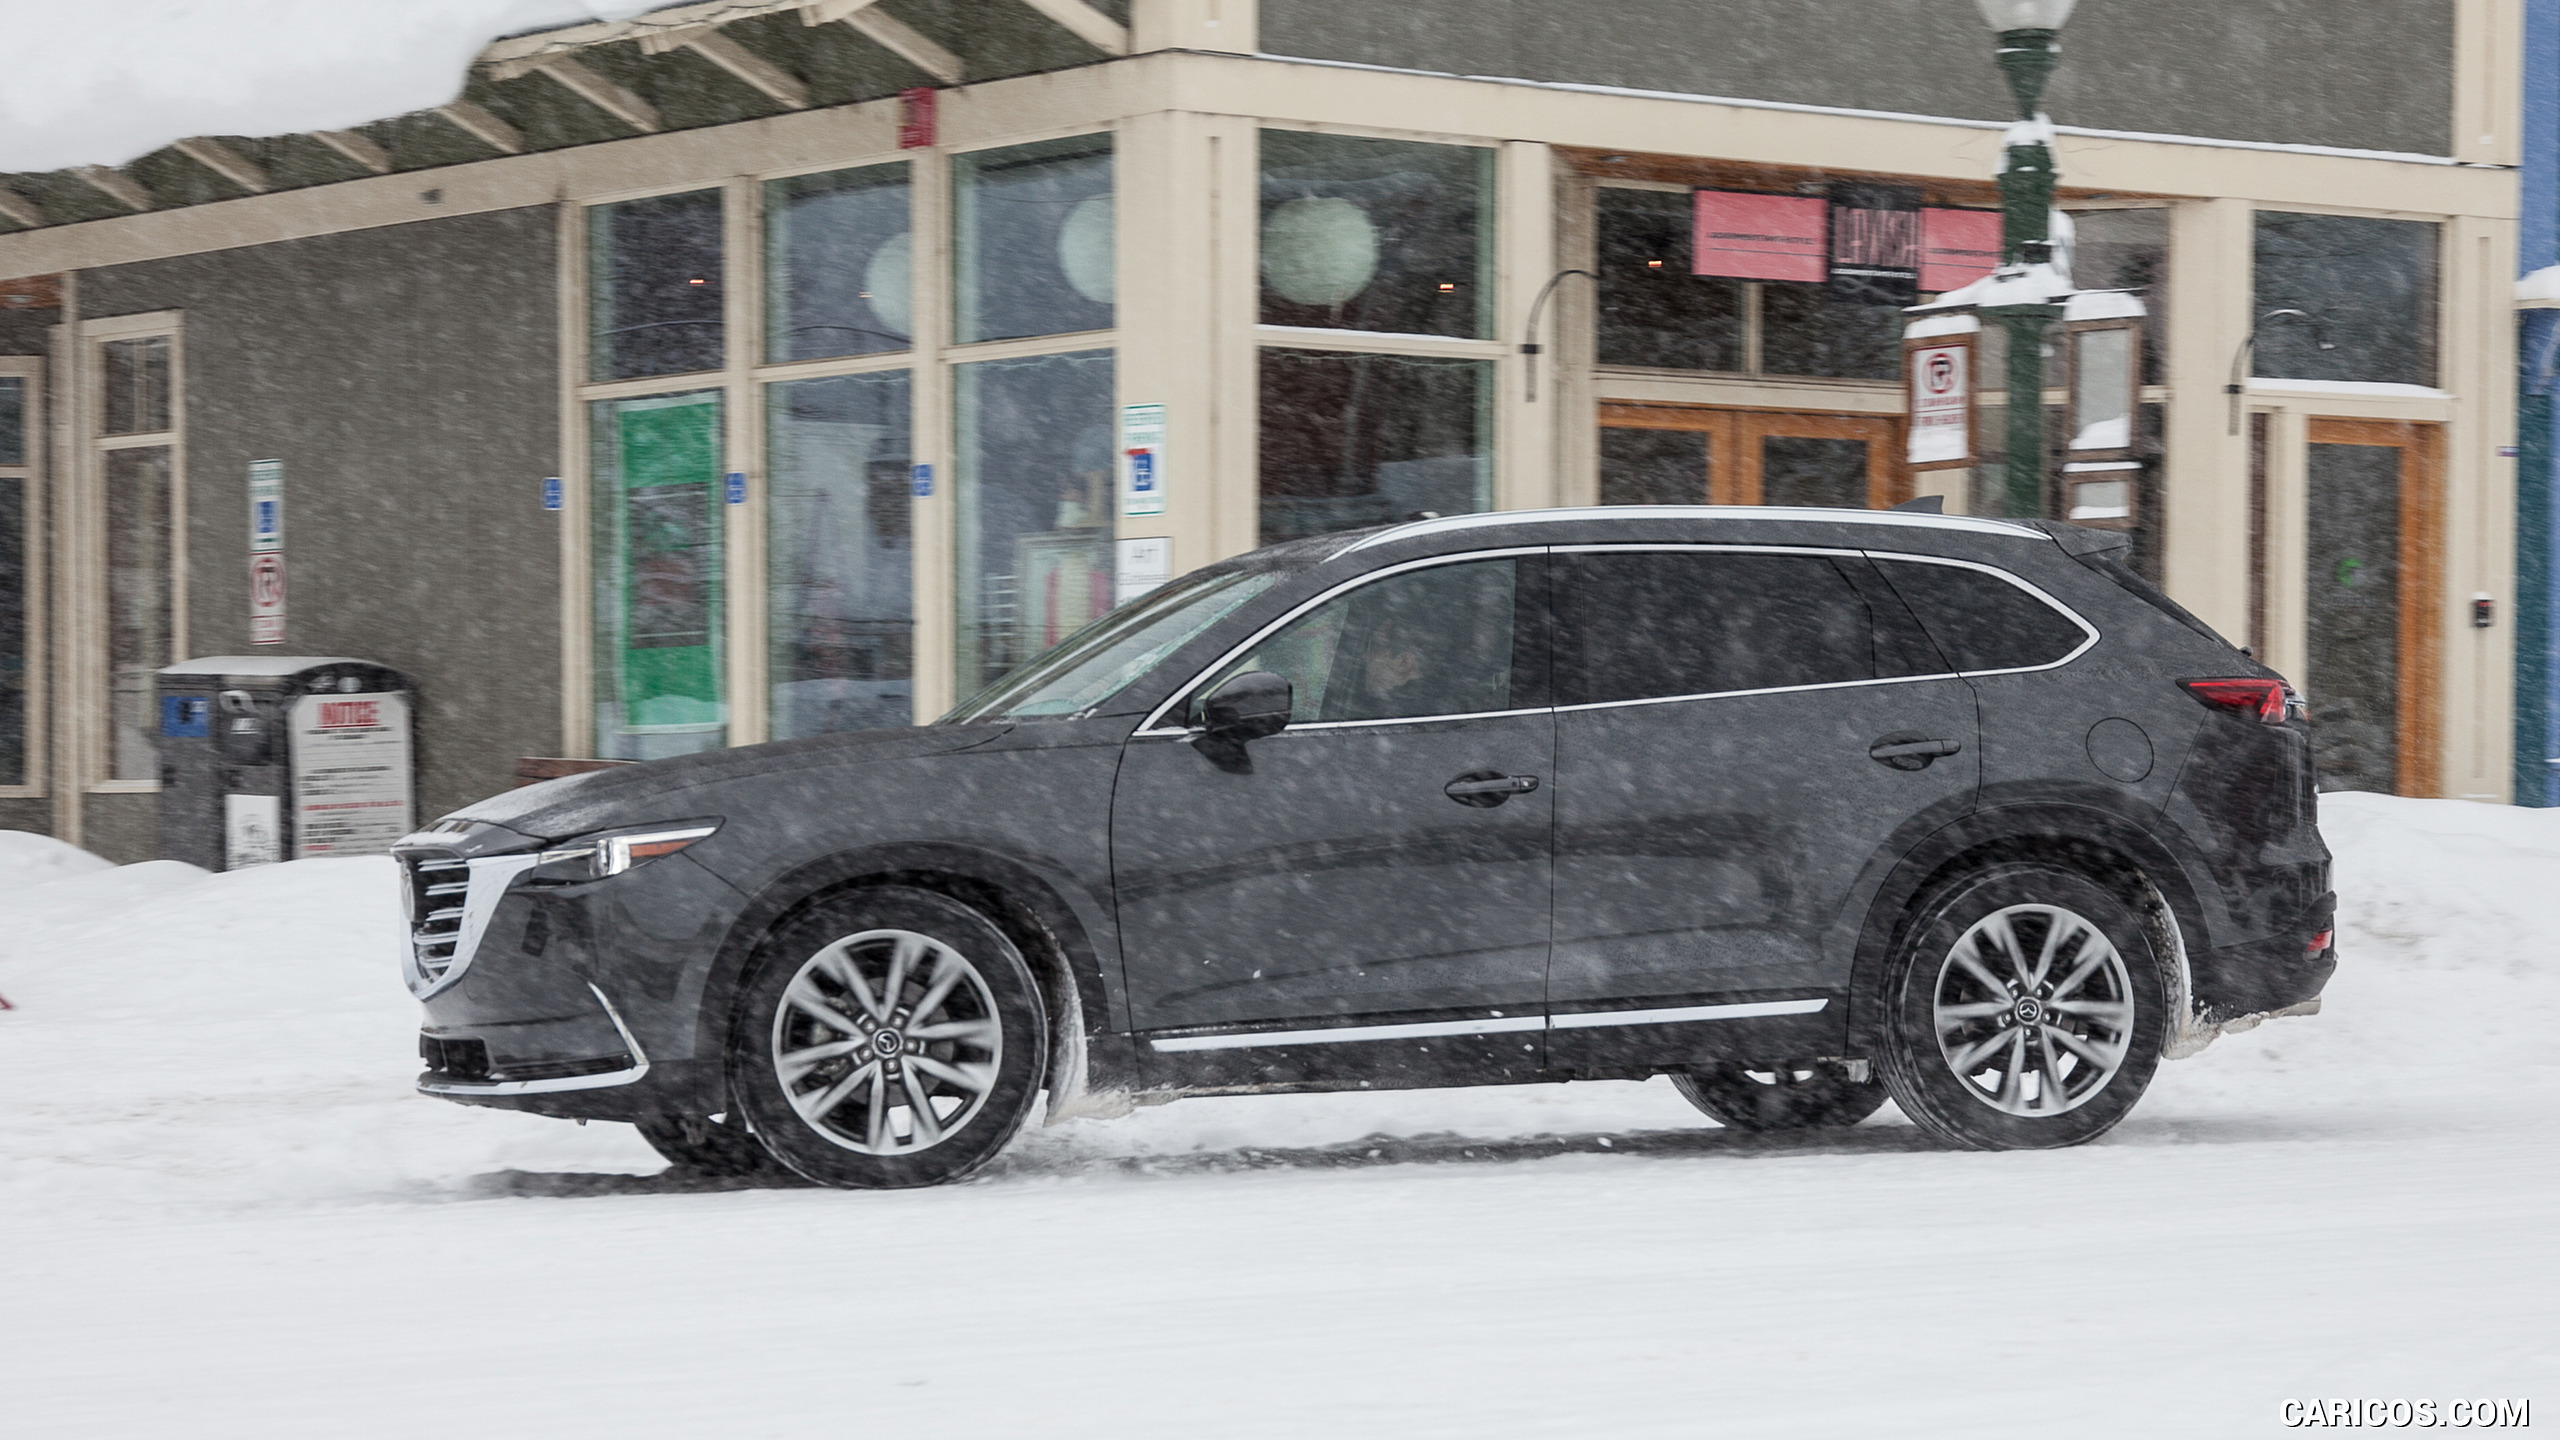 2016 Mazda CX-9 in Snow - Side, #60 of 69